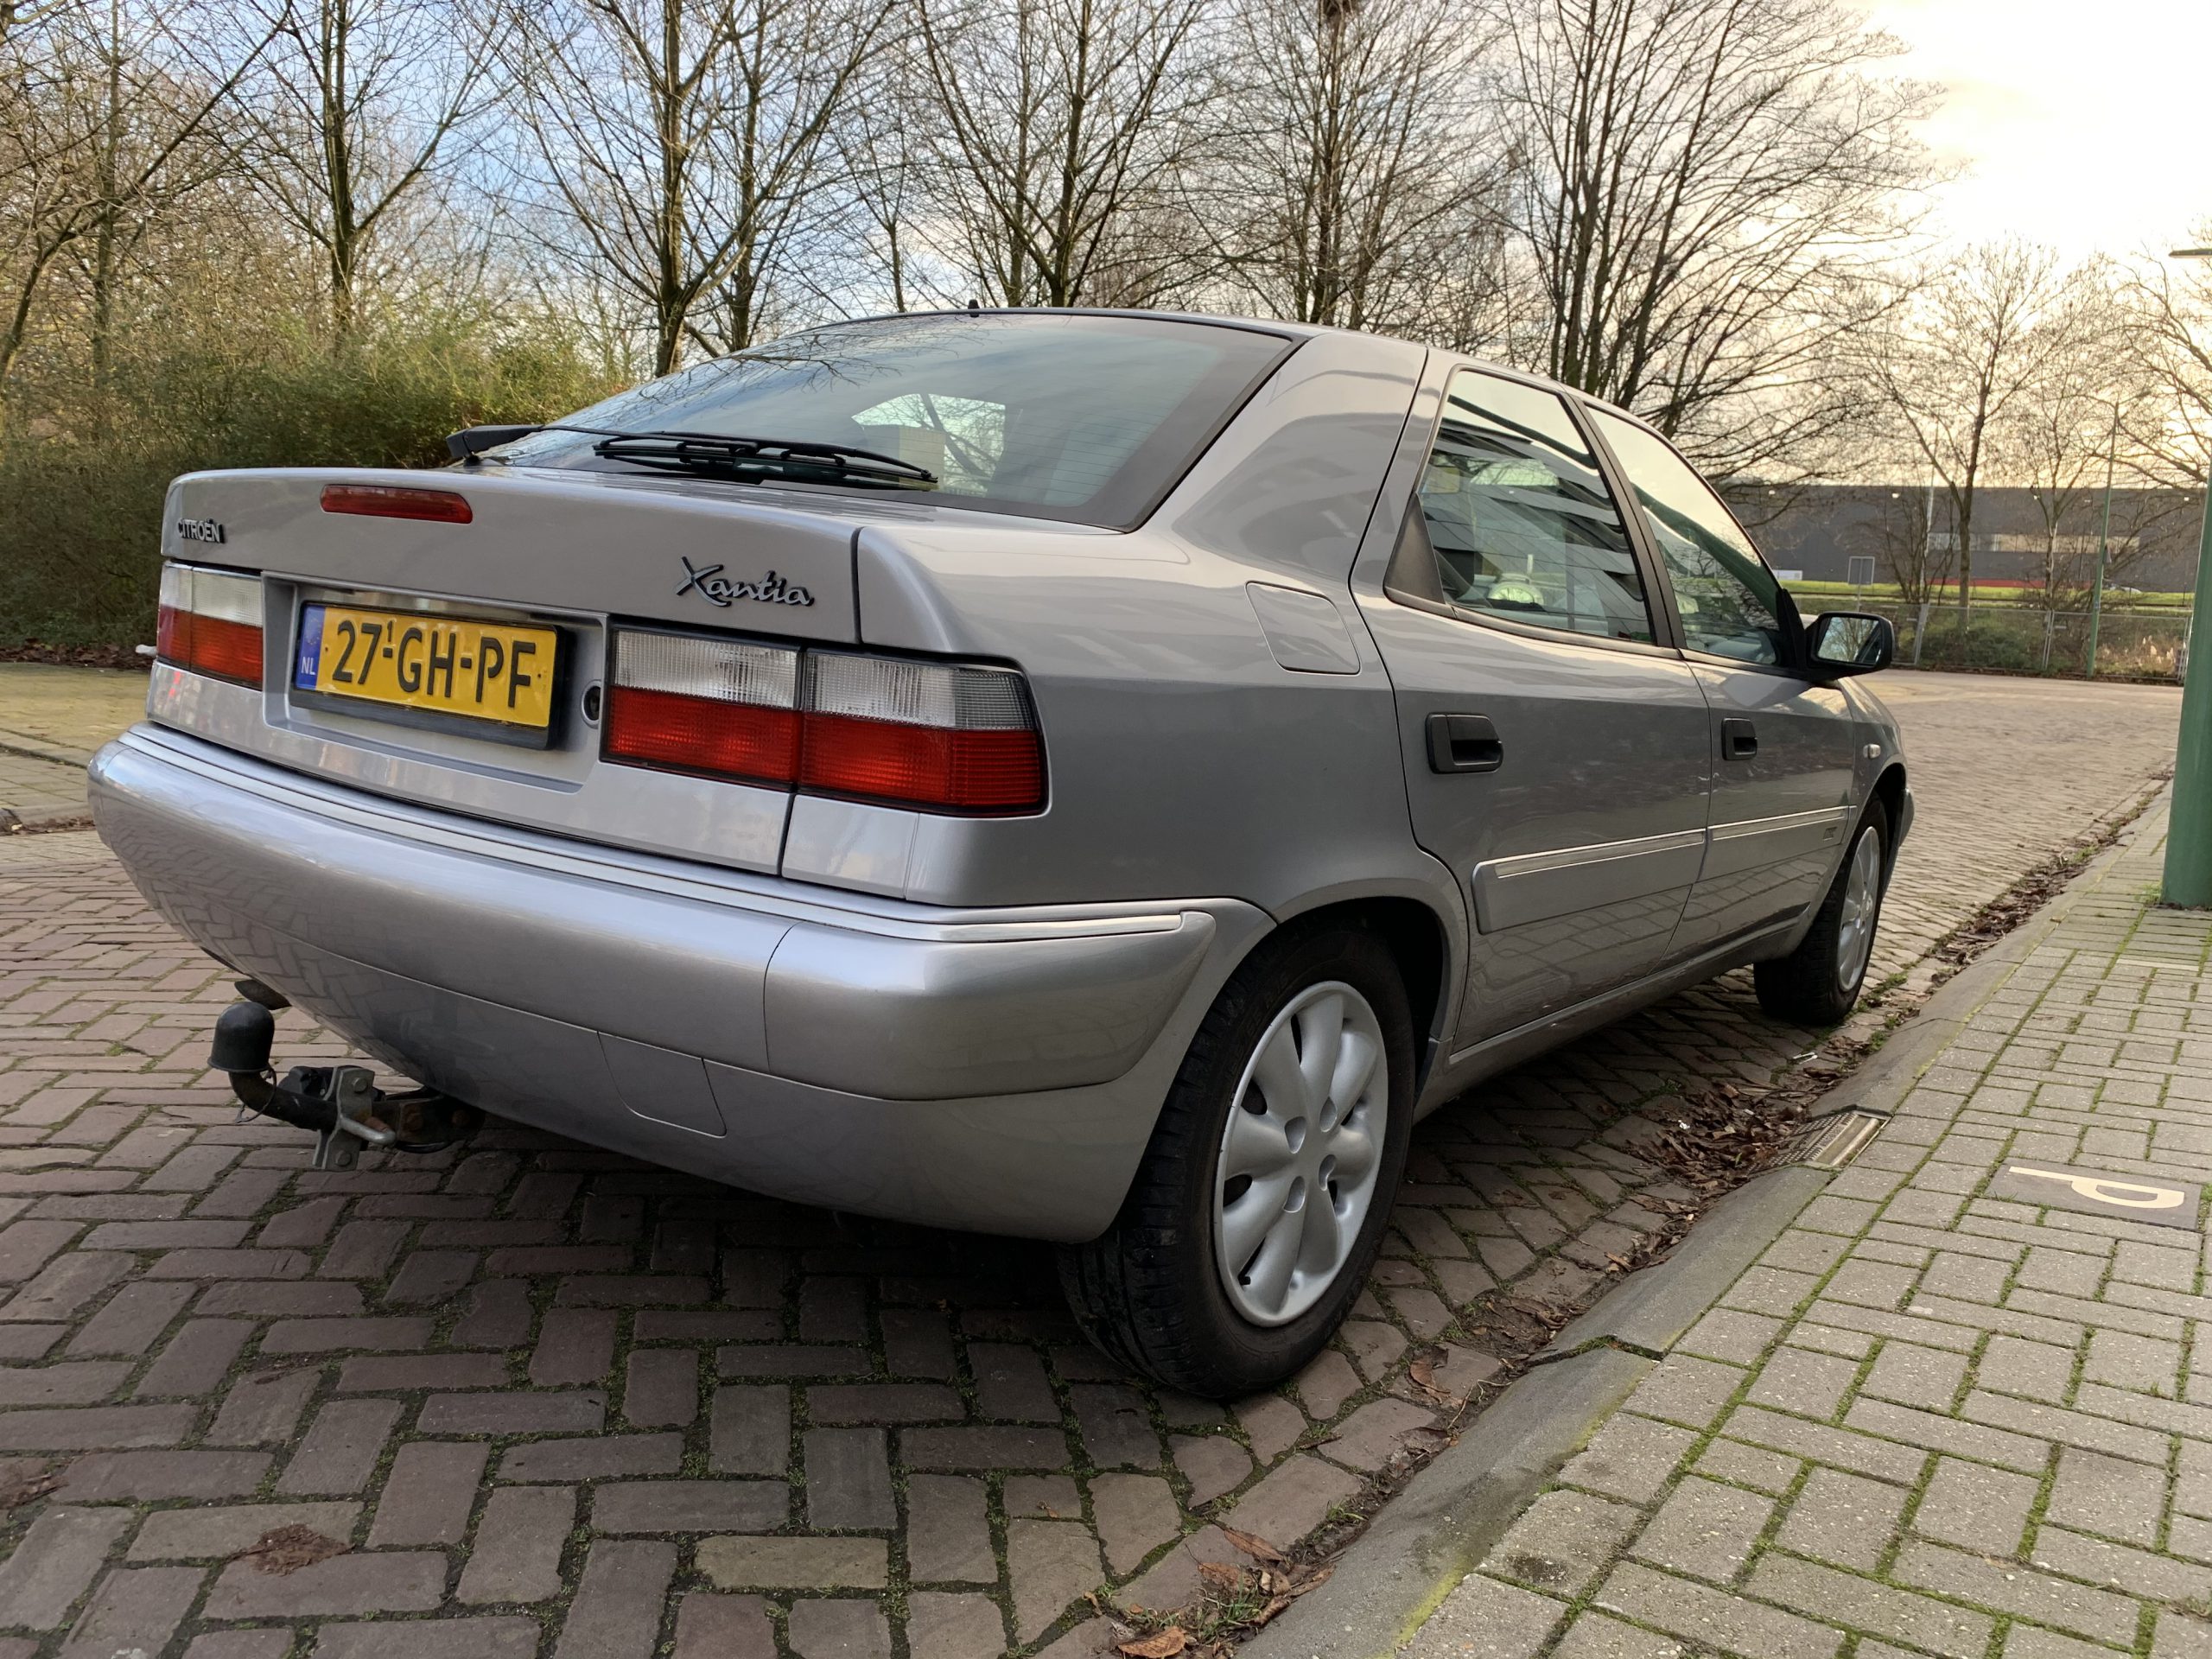 Citroën Xantia 1.8i Millésime